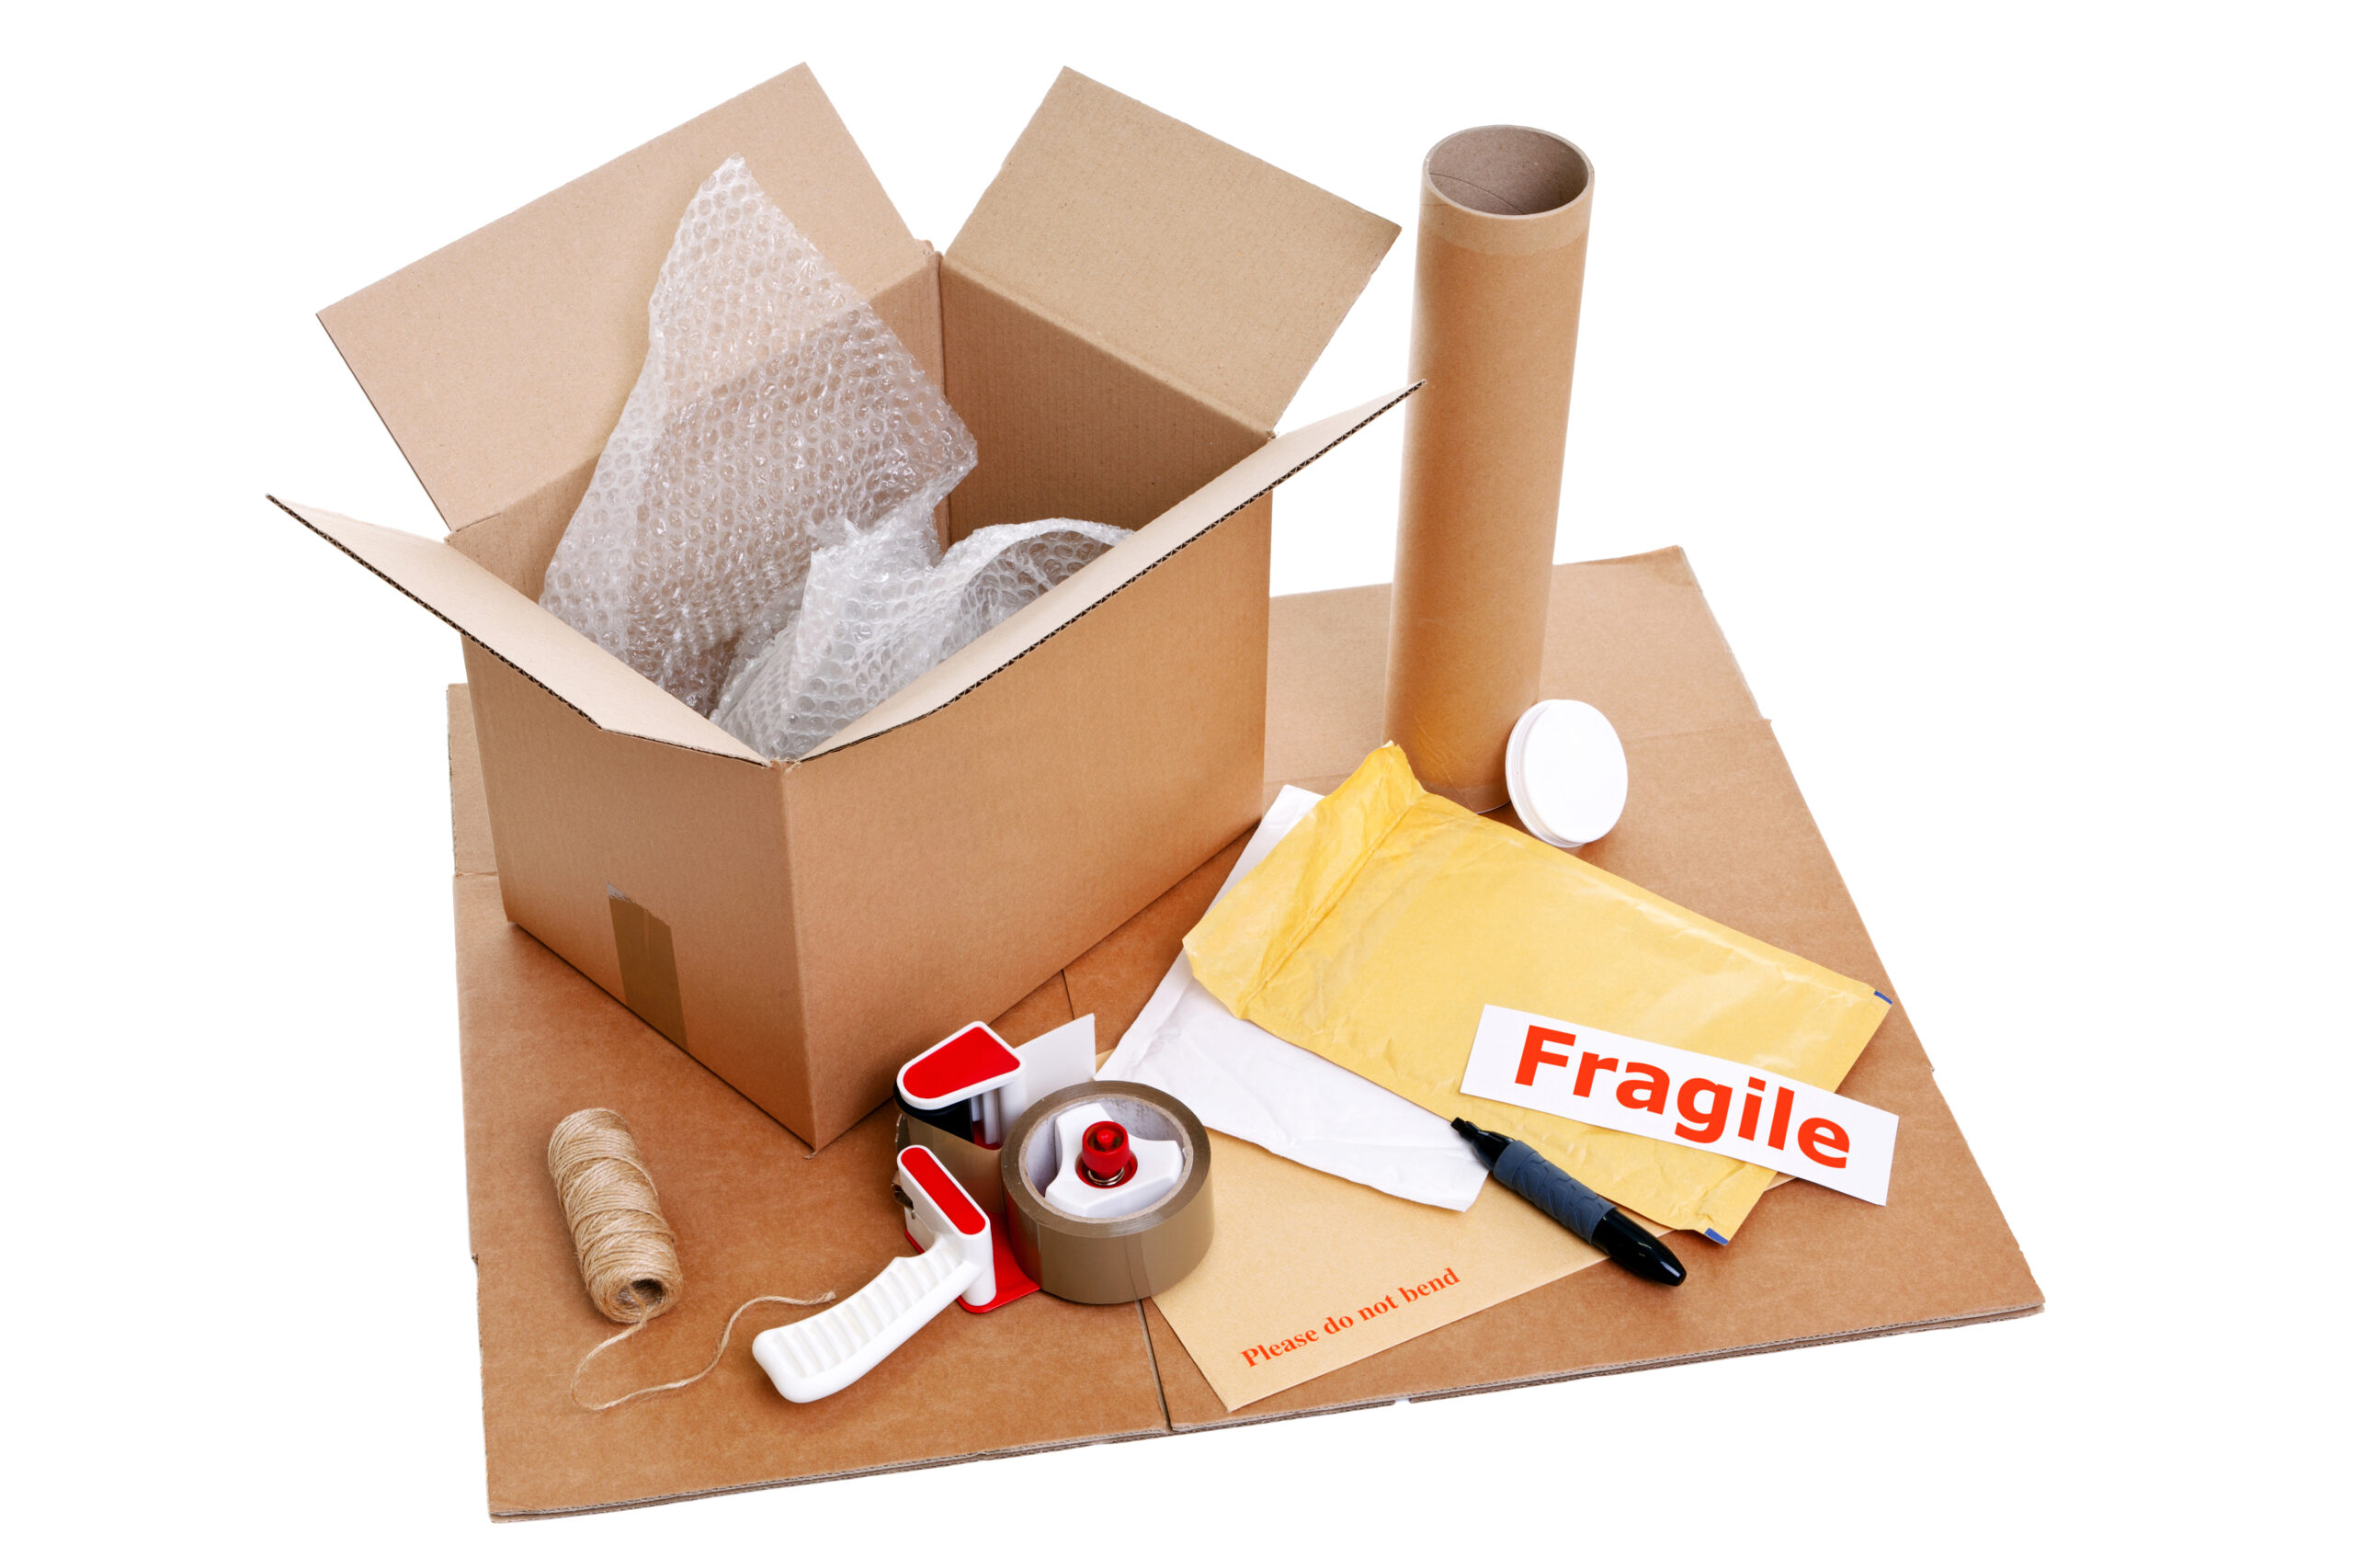 Package items. Упаковка товара. Упаковочная продукция. Упаковочный материал для переезда. Упаковка хрупкого товара.